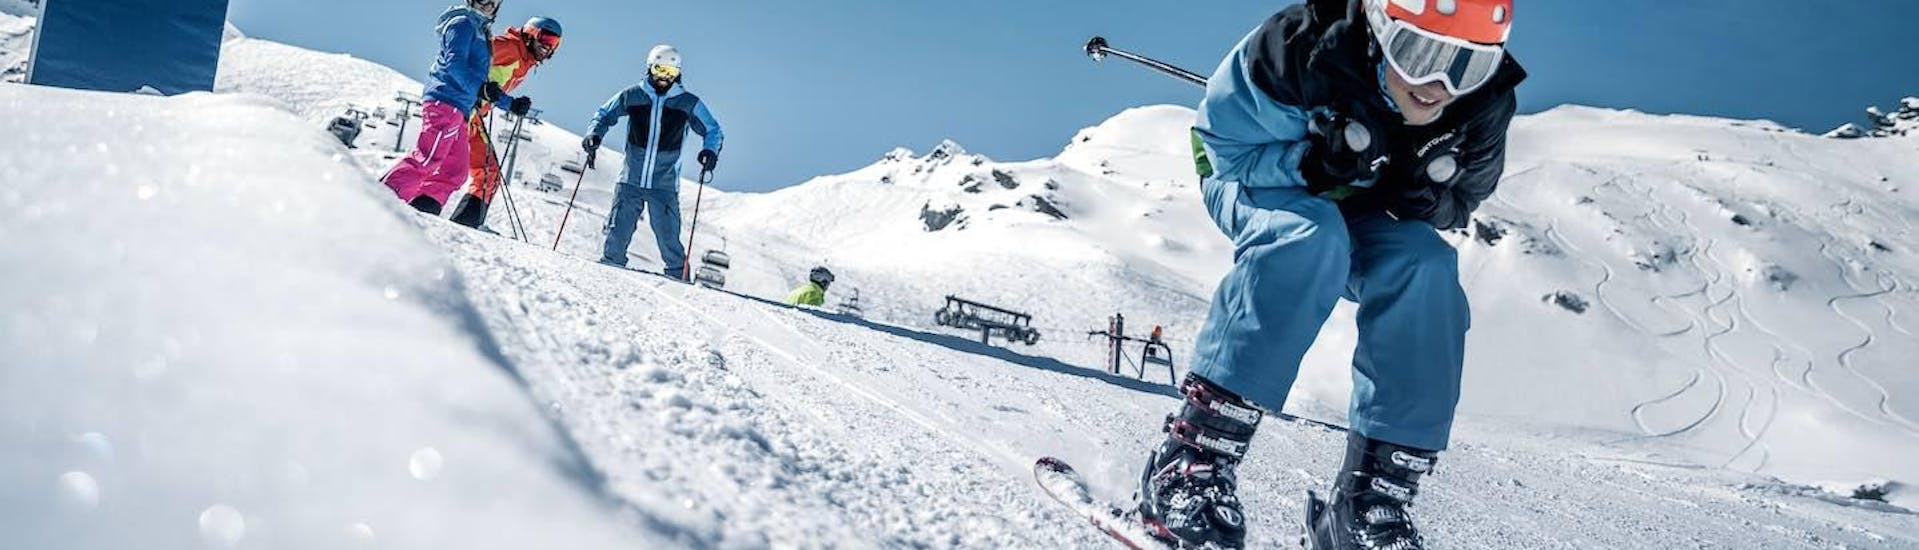 Cours de ski Enfants dès 12 ans pour Tous niveaux.